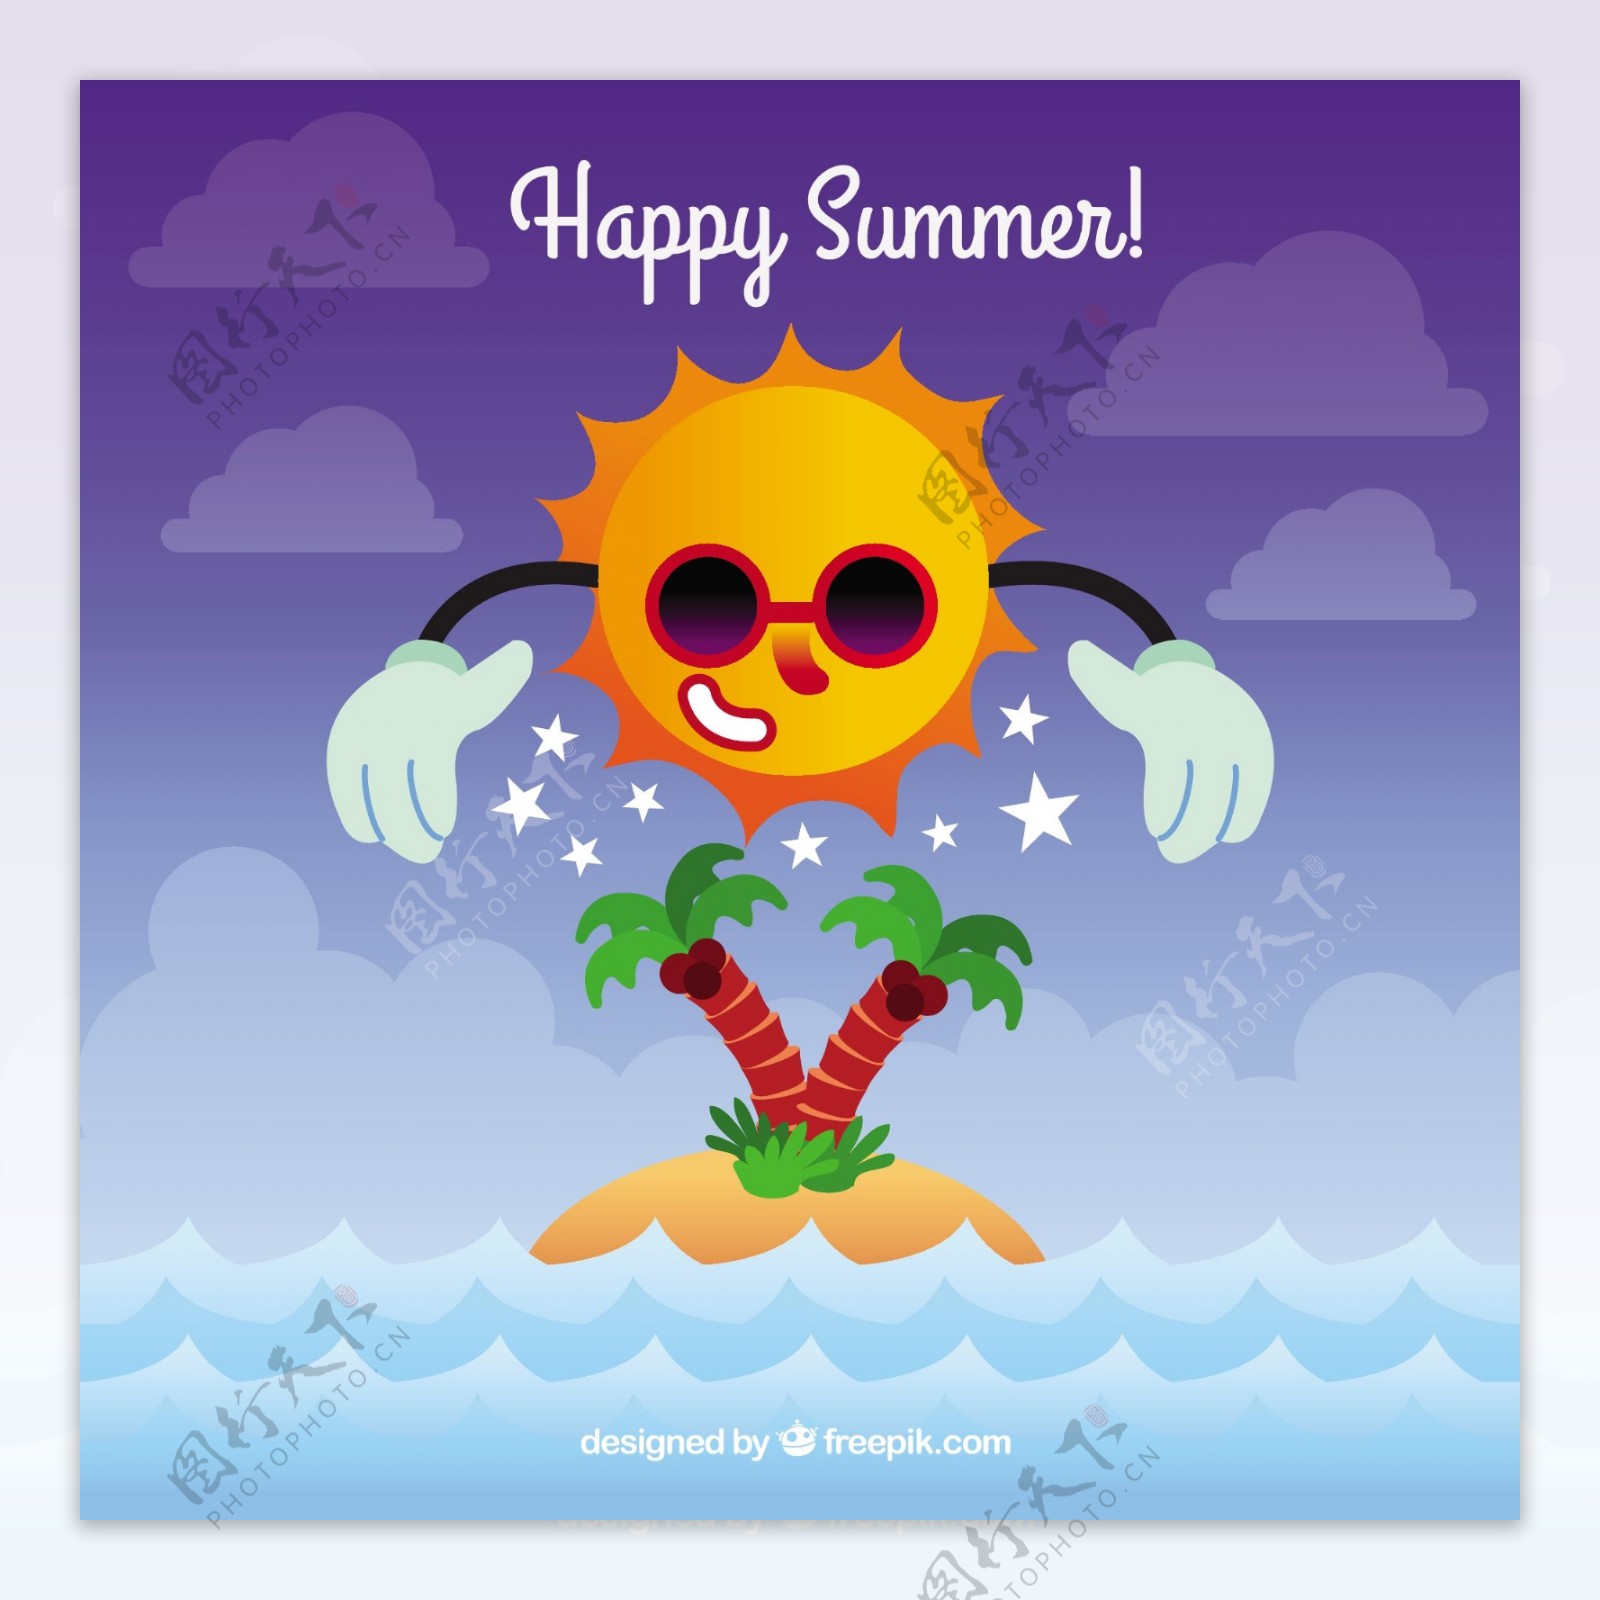 夏日背景与快乐的太阳和岛屿